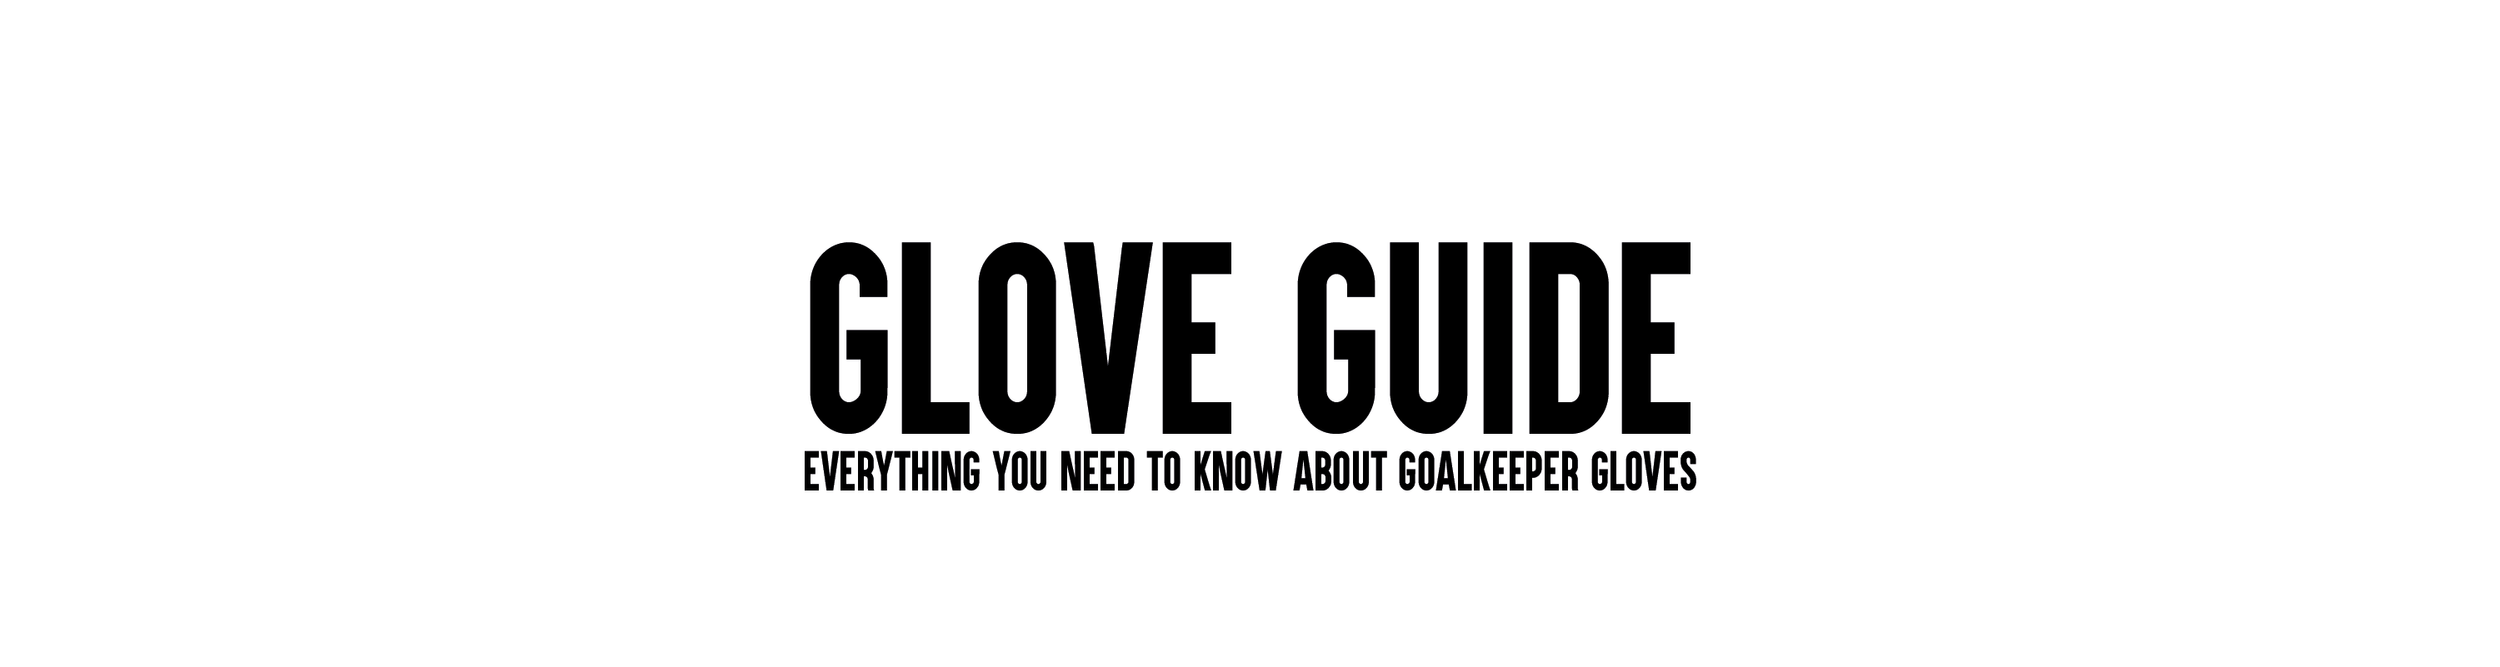 Goalkeeper Glove Guide Tutto quello che devi sapere sui guanti da portiere